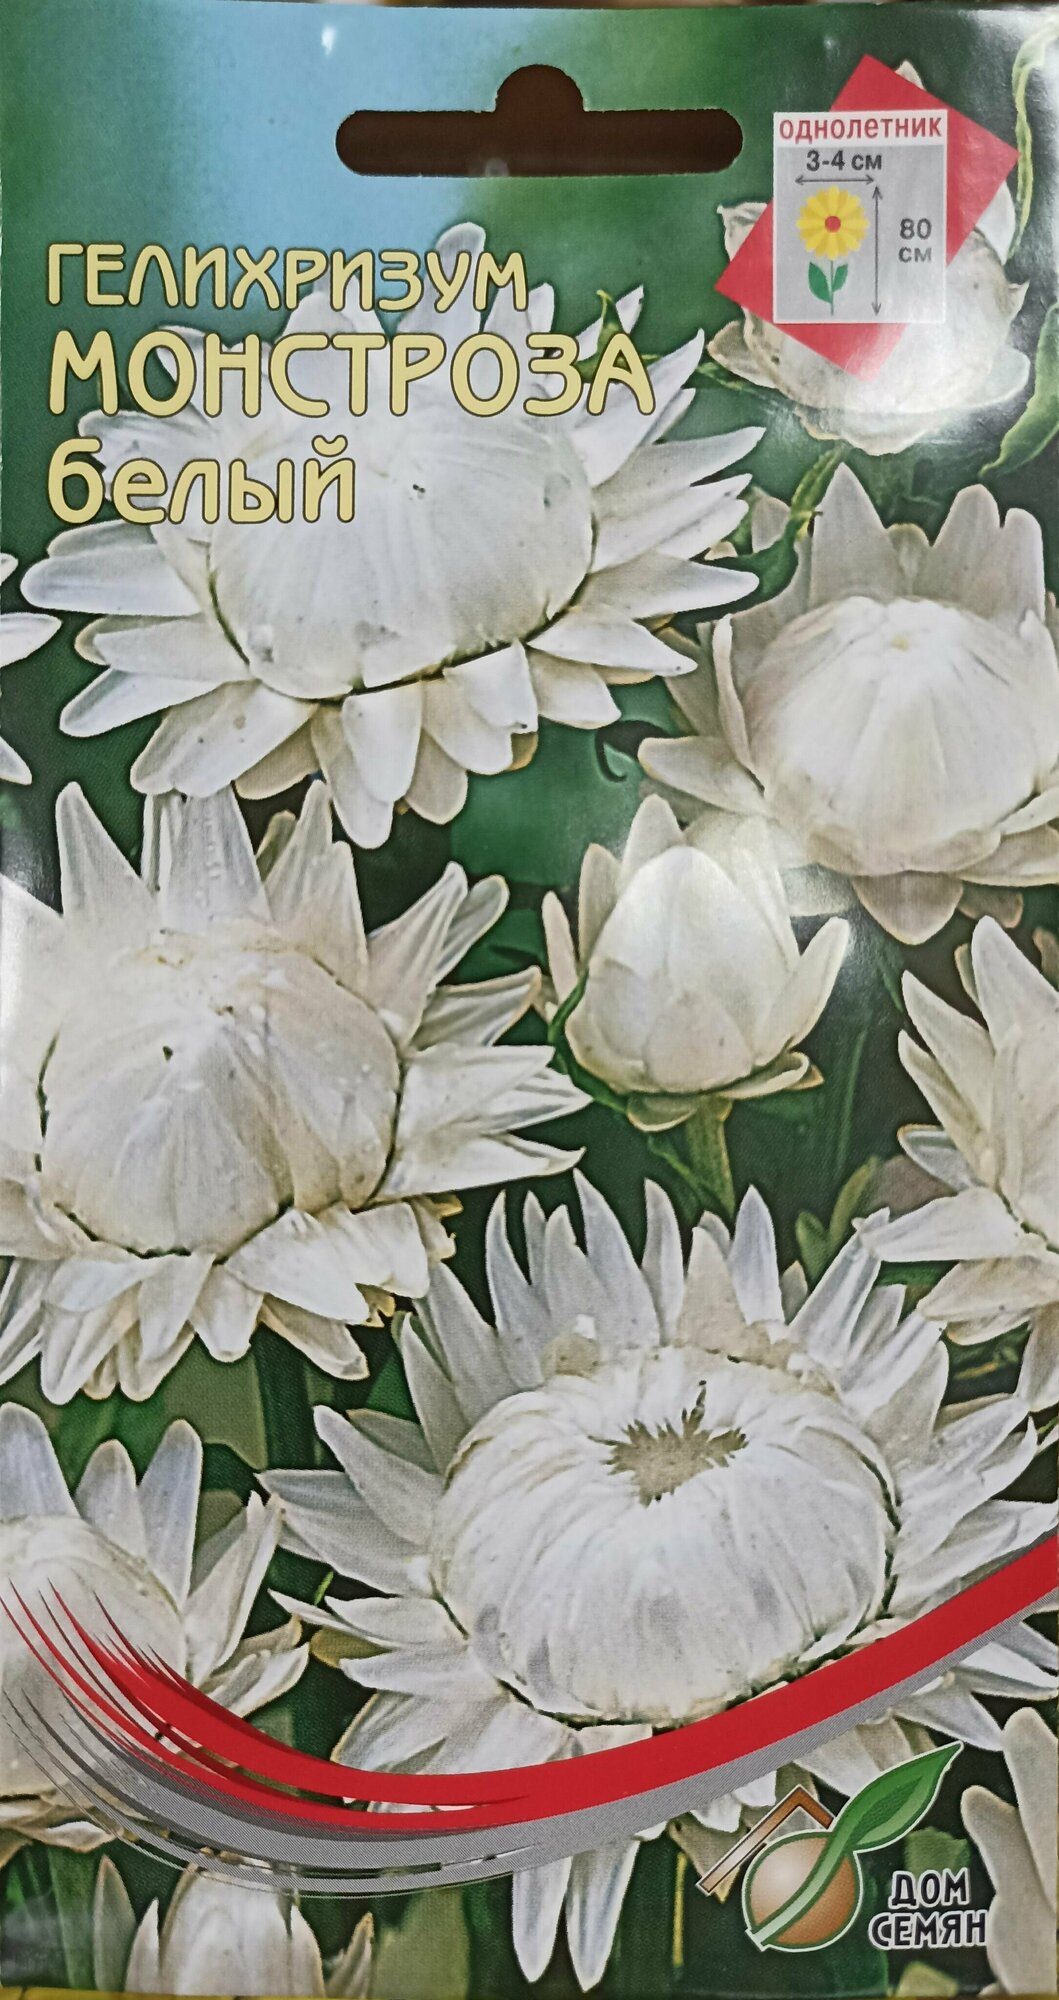 Бессмертник (Гелихризум) Монстроза белый самый популярный среди сухоцветов украшение любой зимней композиции и букета 100 шт семян